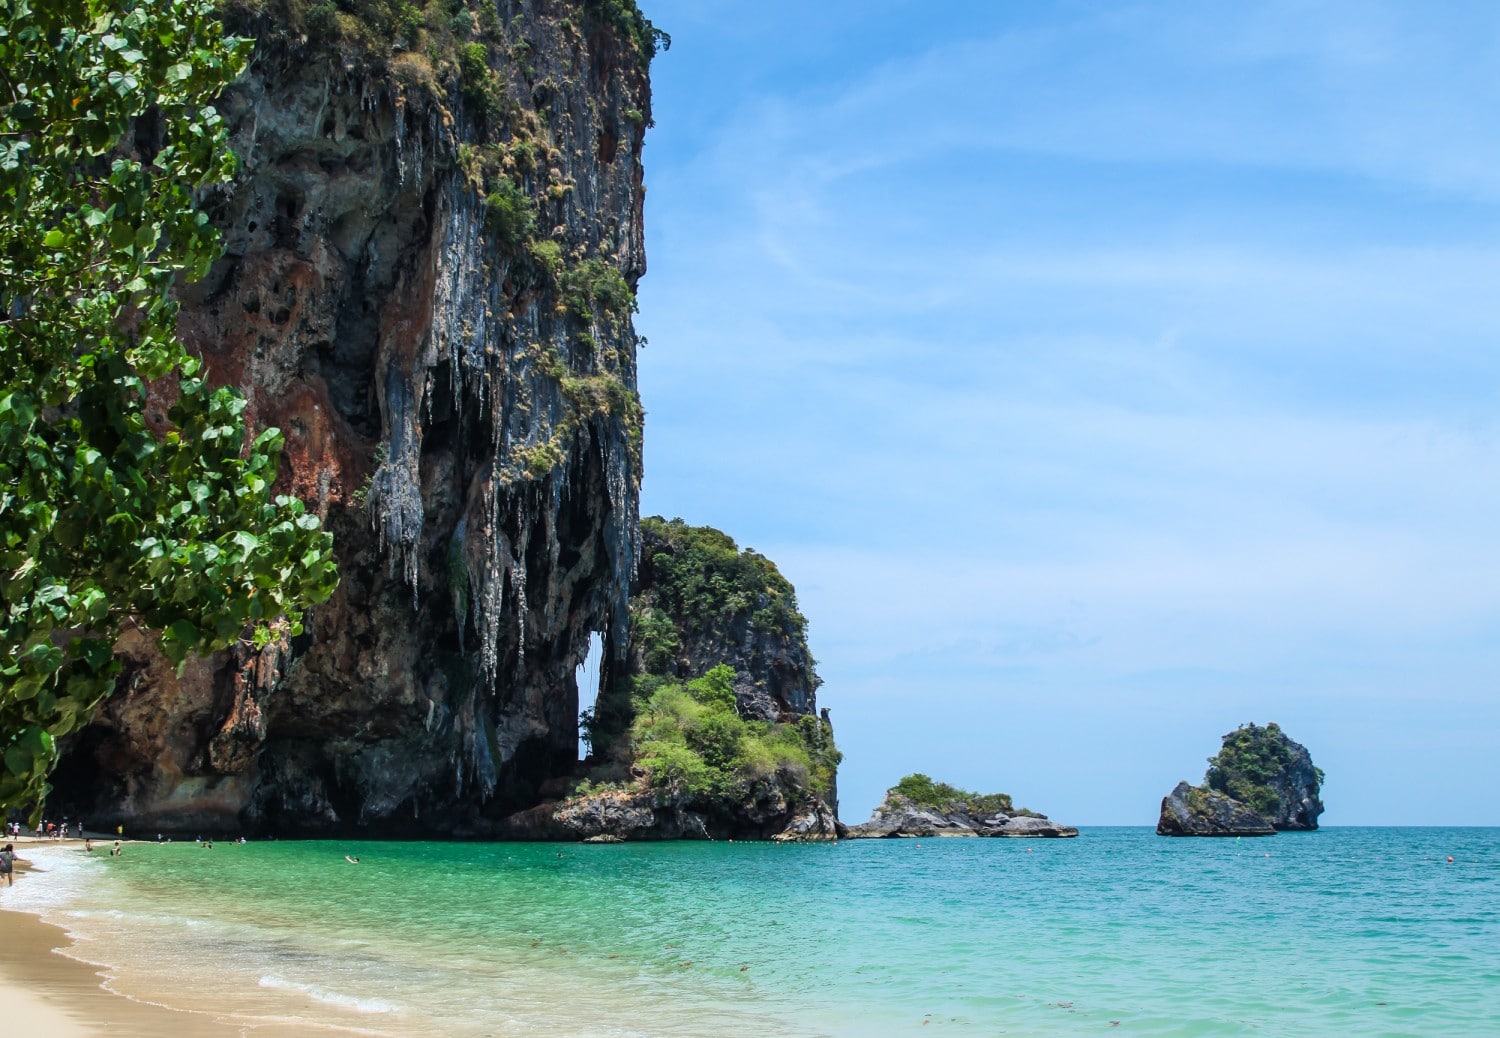 Raylı Plajı.  Dört harika Güneydoğu Asya seyahat programı I Fotoğrafçılık I Yol Programı I Manzara I Yemek I Mimarlık I Laos I Tayland I Kamboçya I Myanmar I Malezya I Vietnam.  Seyahat rehberinin tamamını şimdi okuyun #seyahat #backpacking